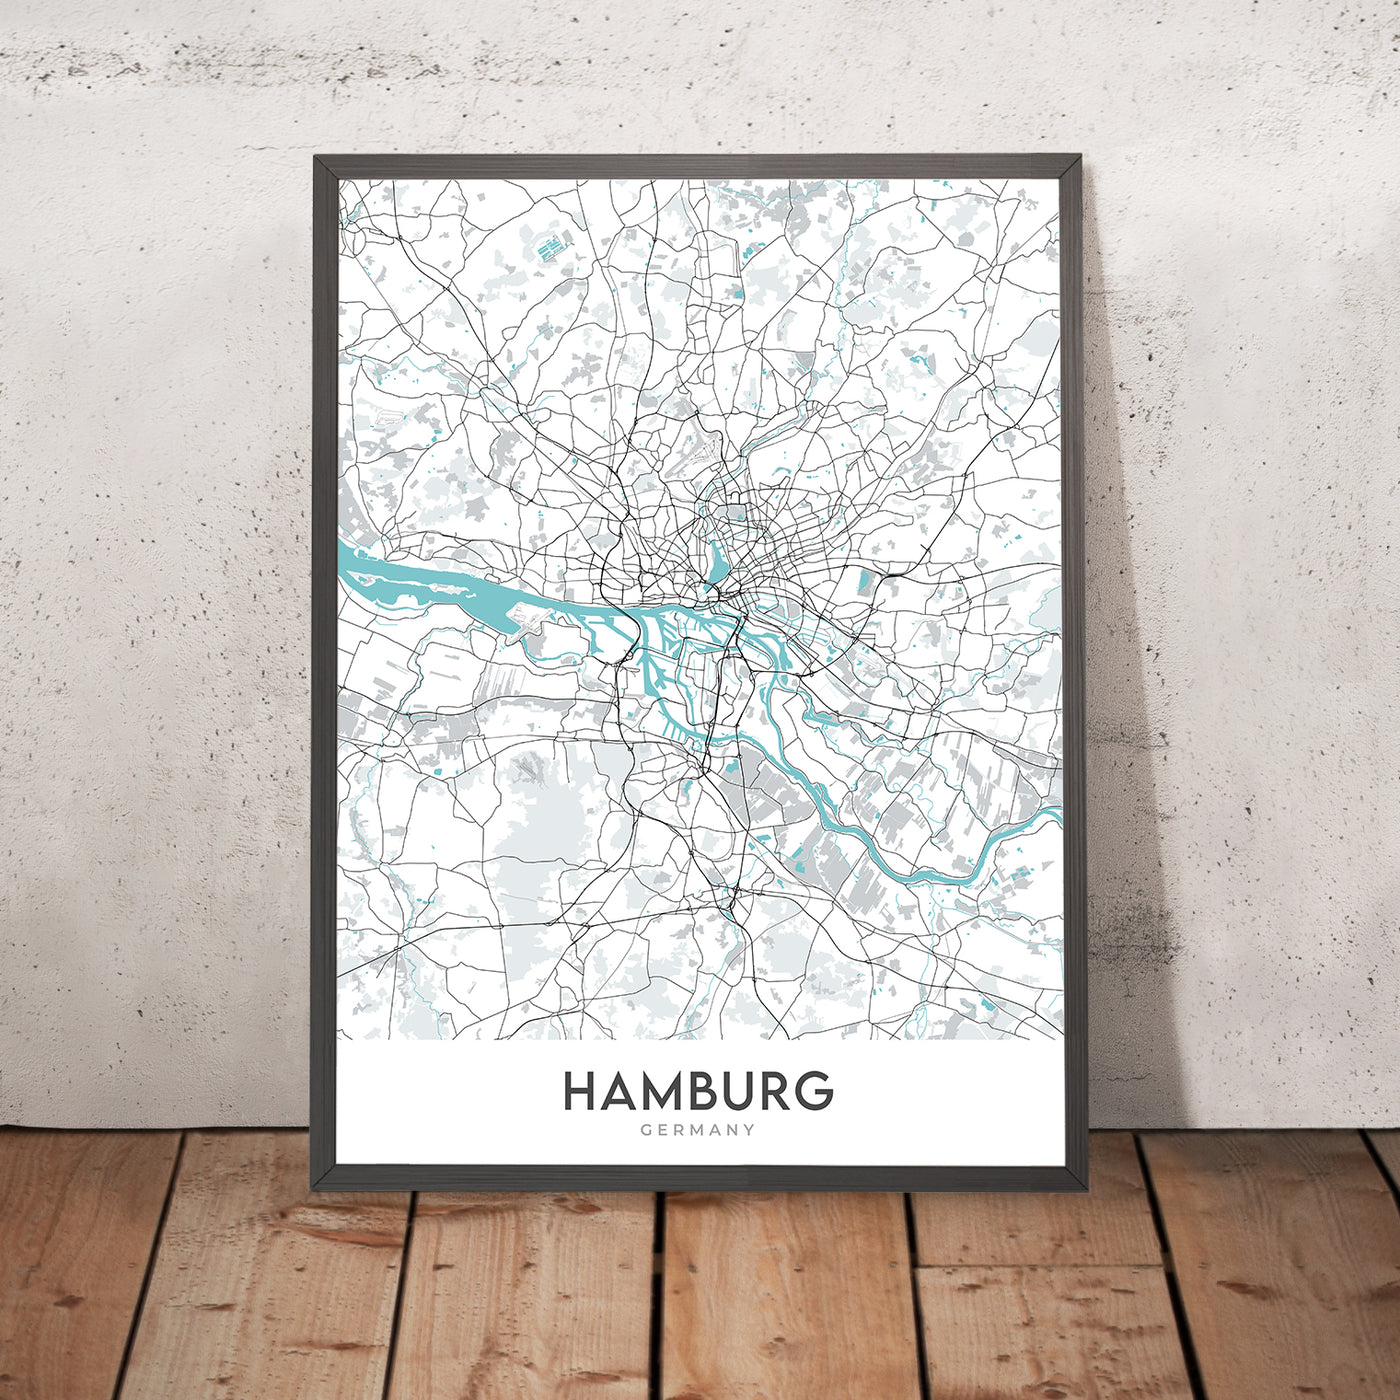 Moderner Stadtplan von Hamburg, Deutschland: Altstadt, St. Pauli, Elbphilharmonie, Reeperbahn, Planten un Blomen